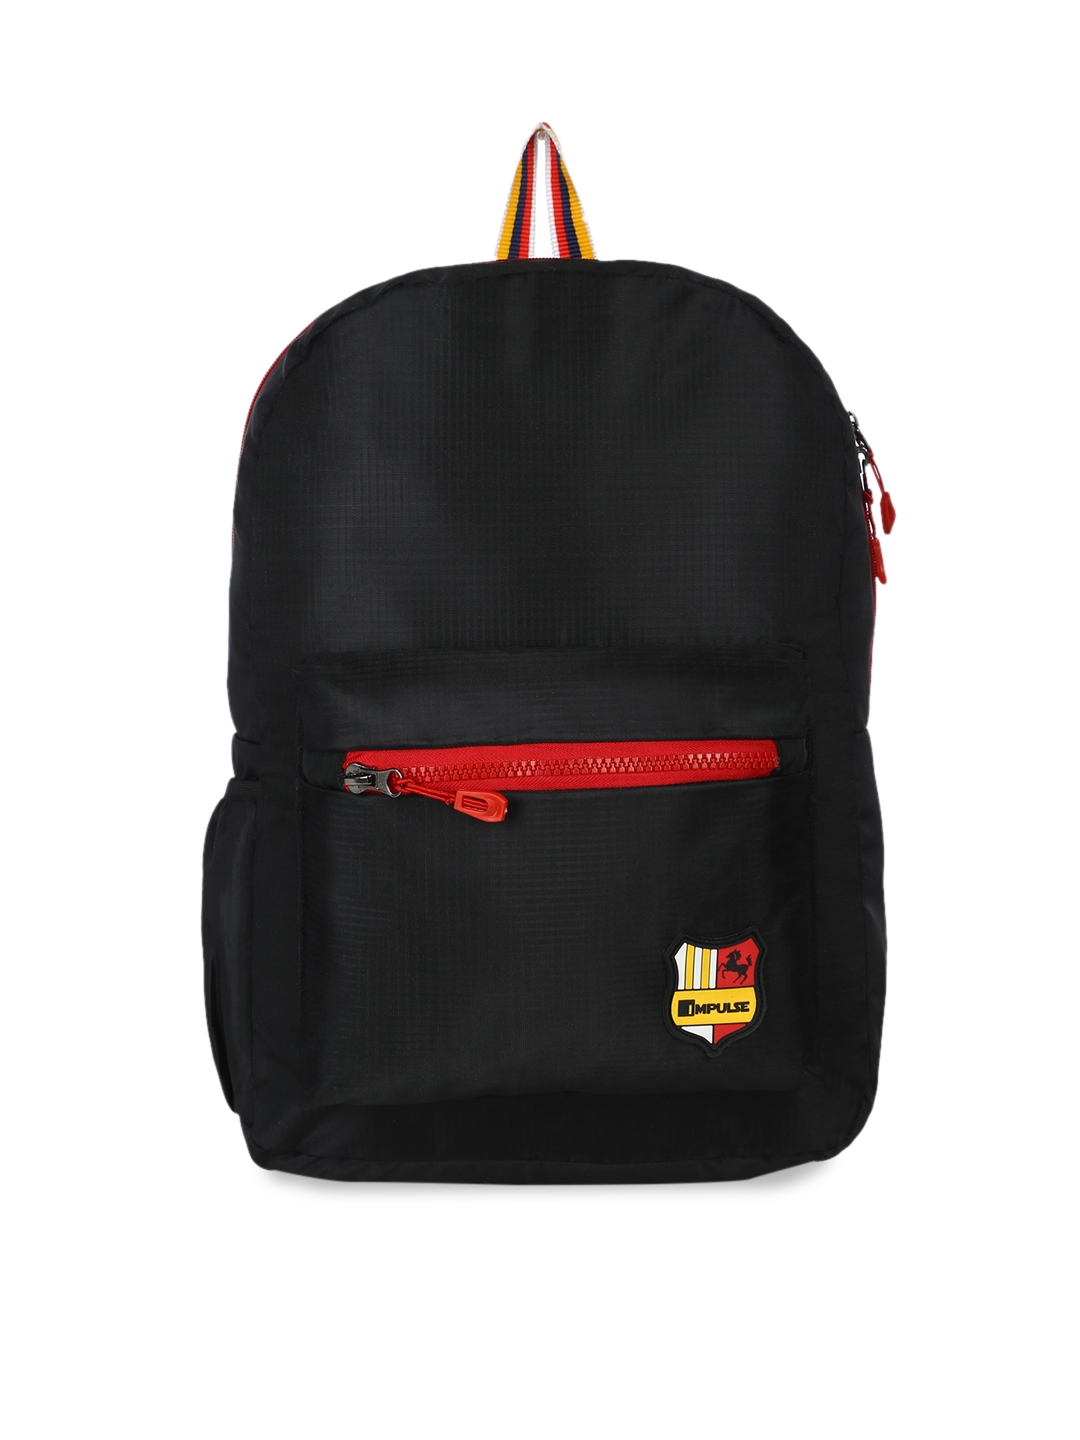 Impulse Kids Black Solid Backpack 30L